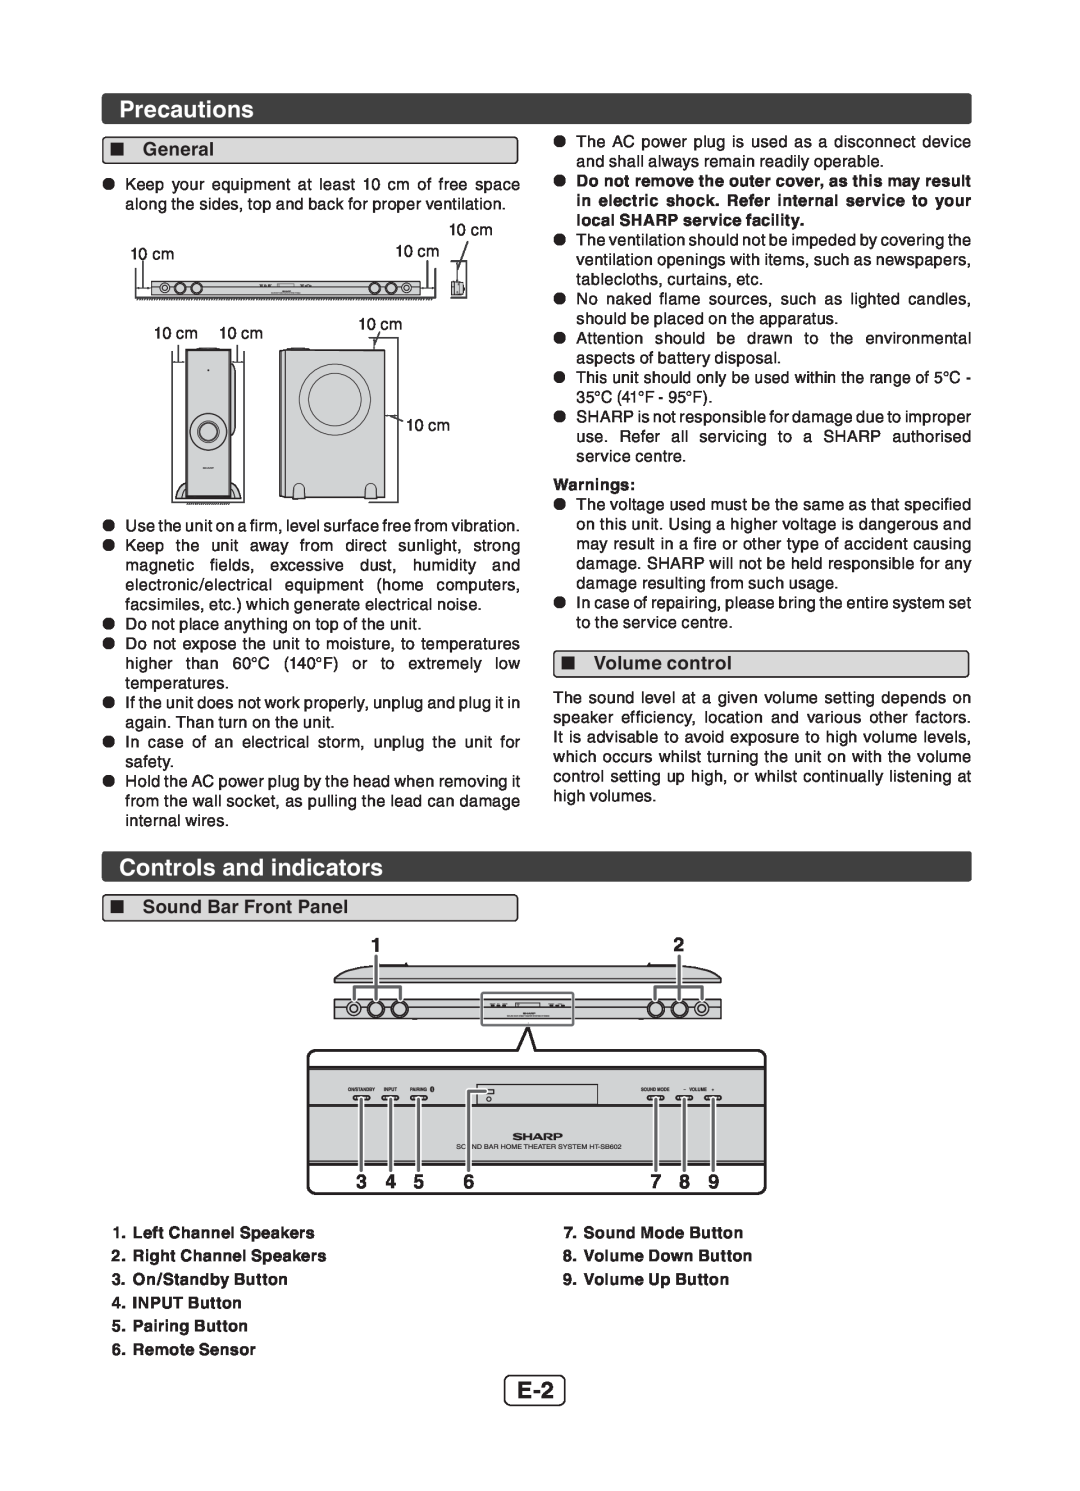 Sharp HT-SB602 operation manual Precautions, Controls and indicators 